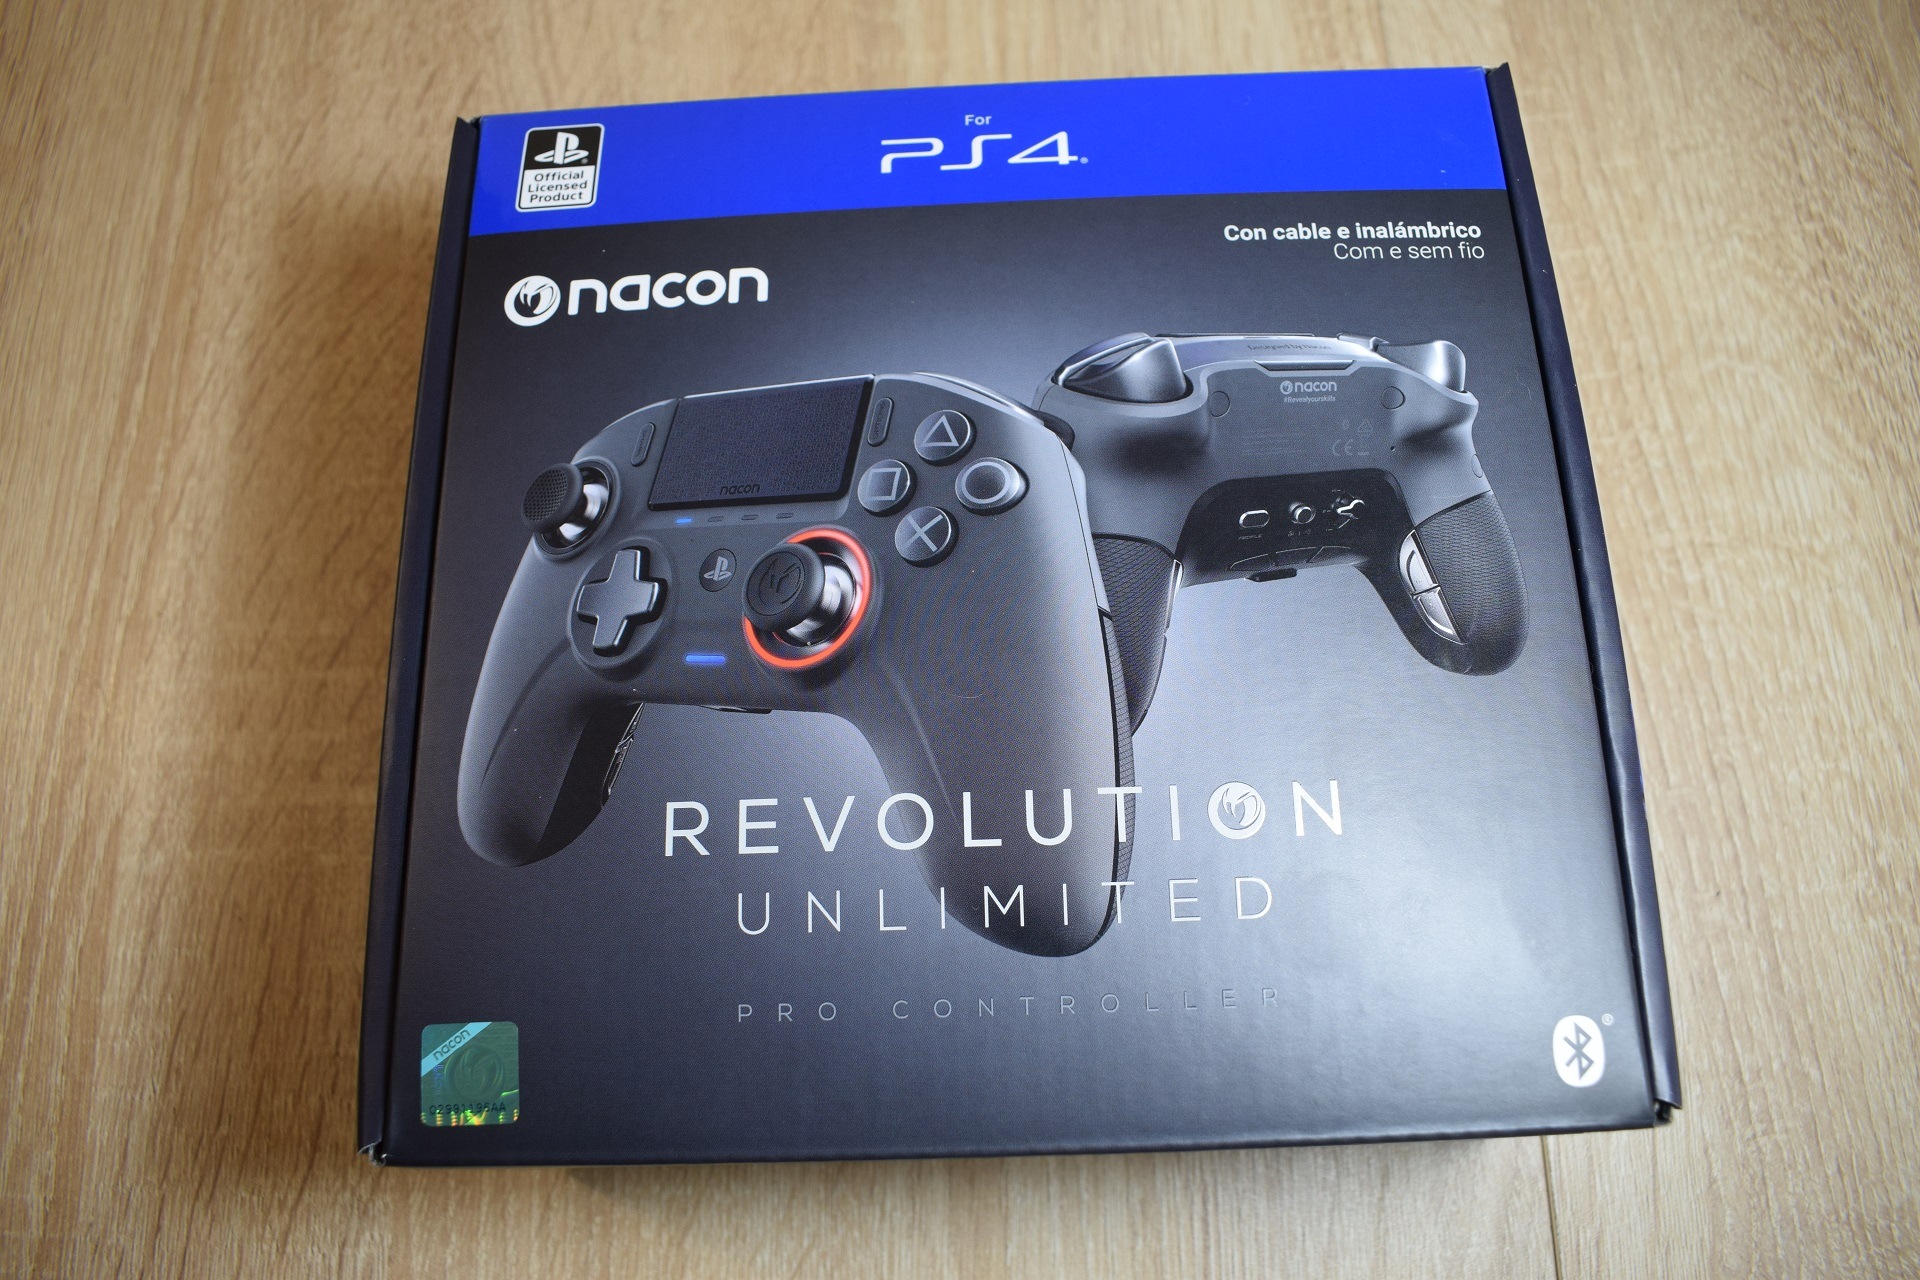 Nacon Revolution Unlimited Pro Controller, análisis: review con vídeo,  precio y experiencia de uso